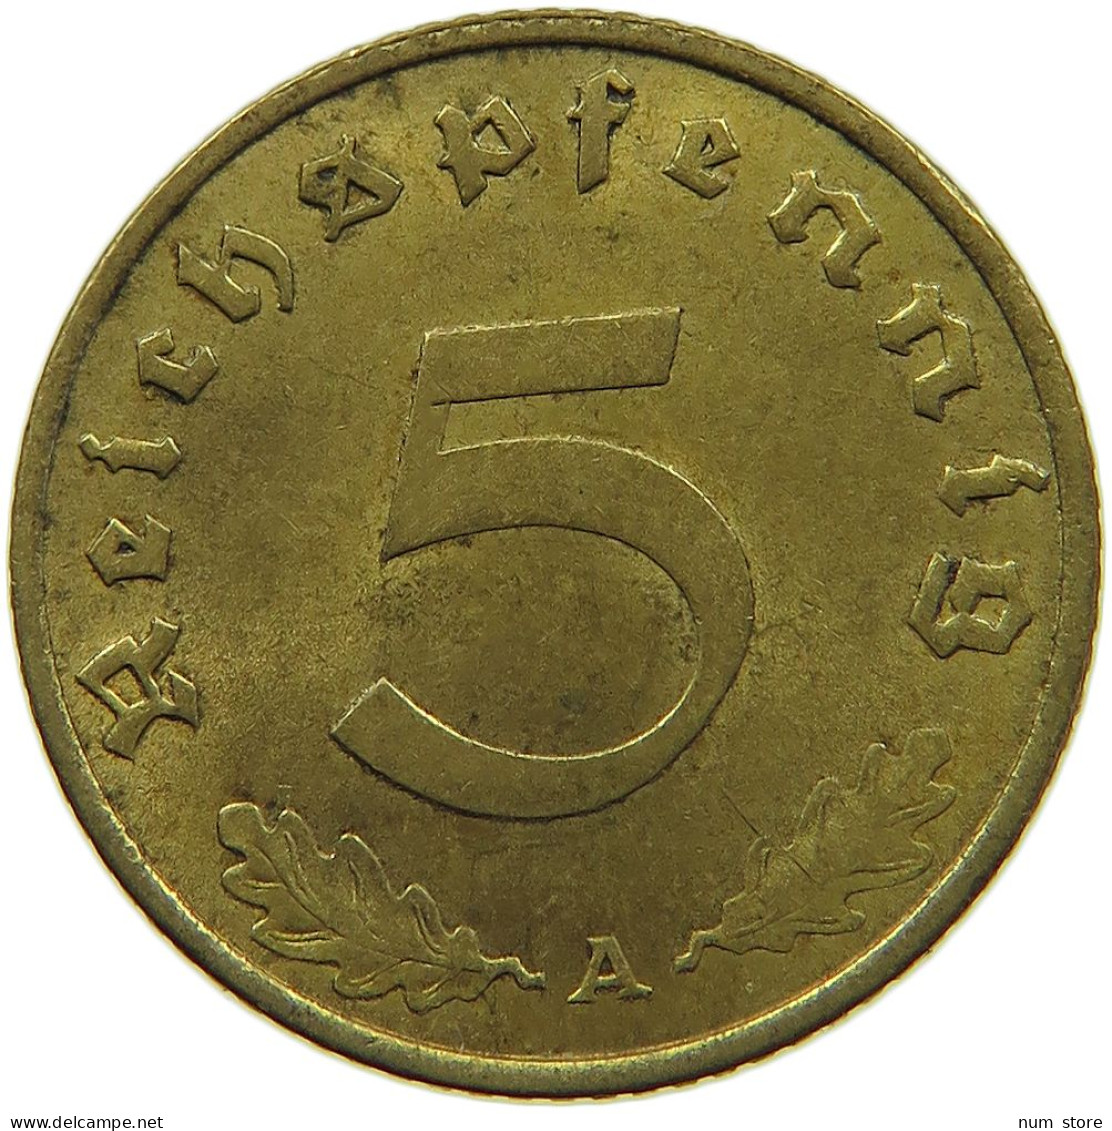 GERMANY 5 REICHSPFENNIG 1937 A #s091 0675 - 5 Reichspfennig